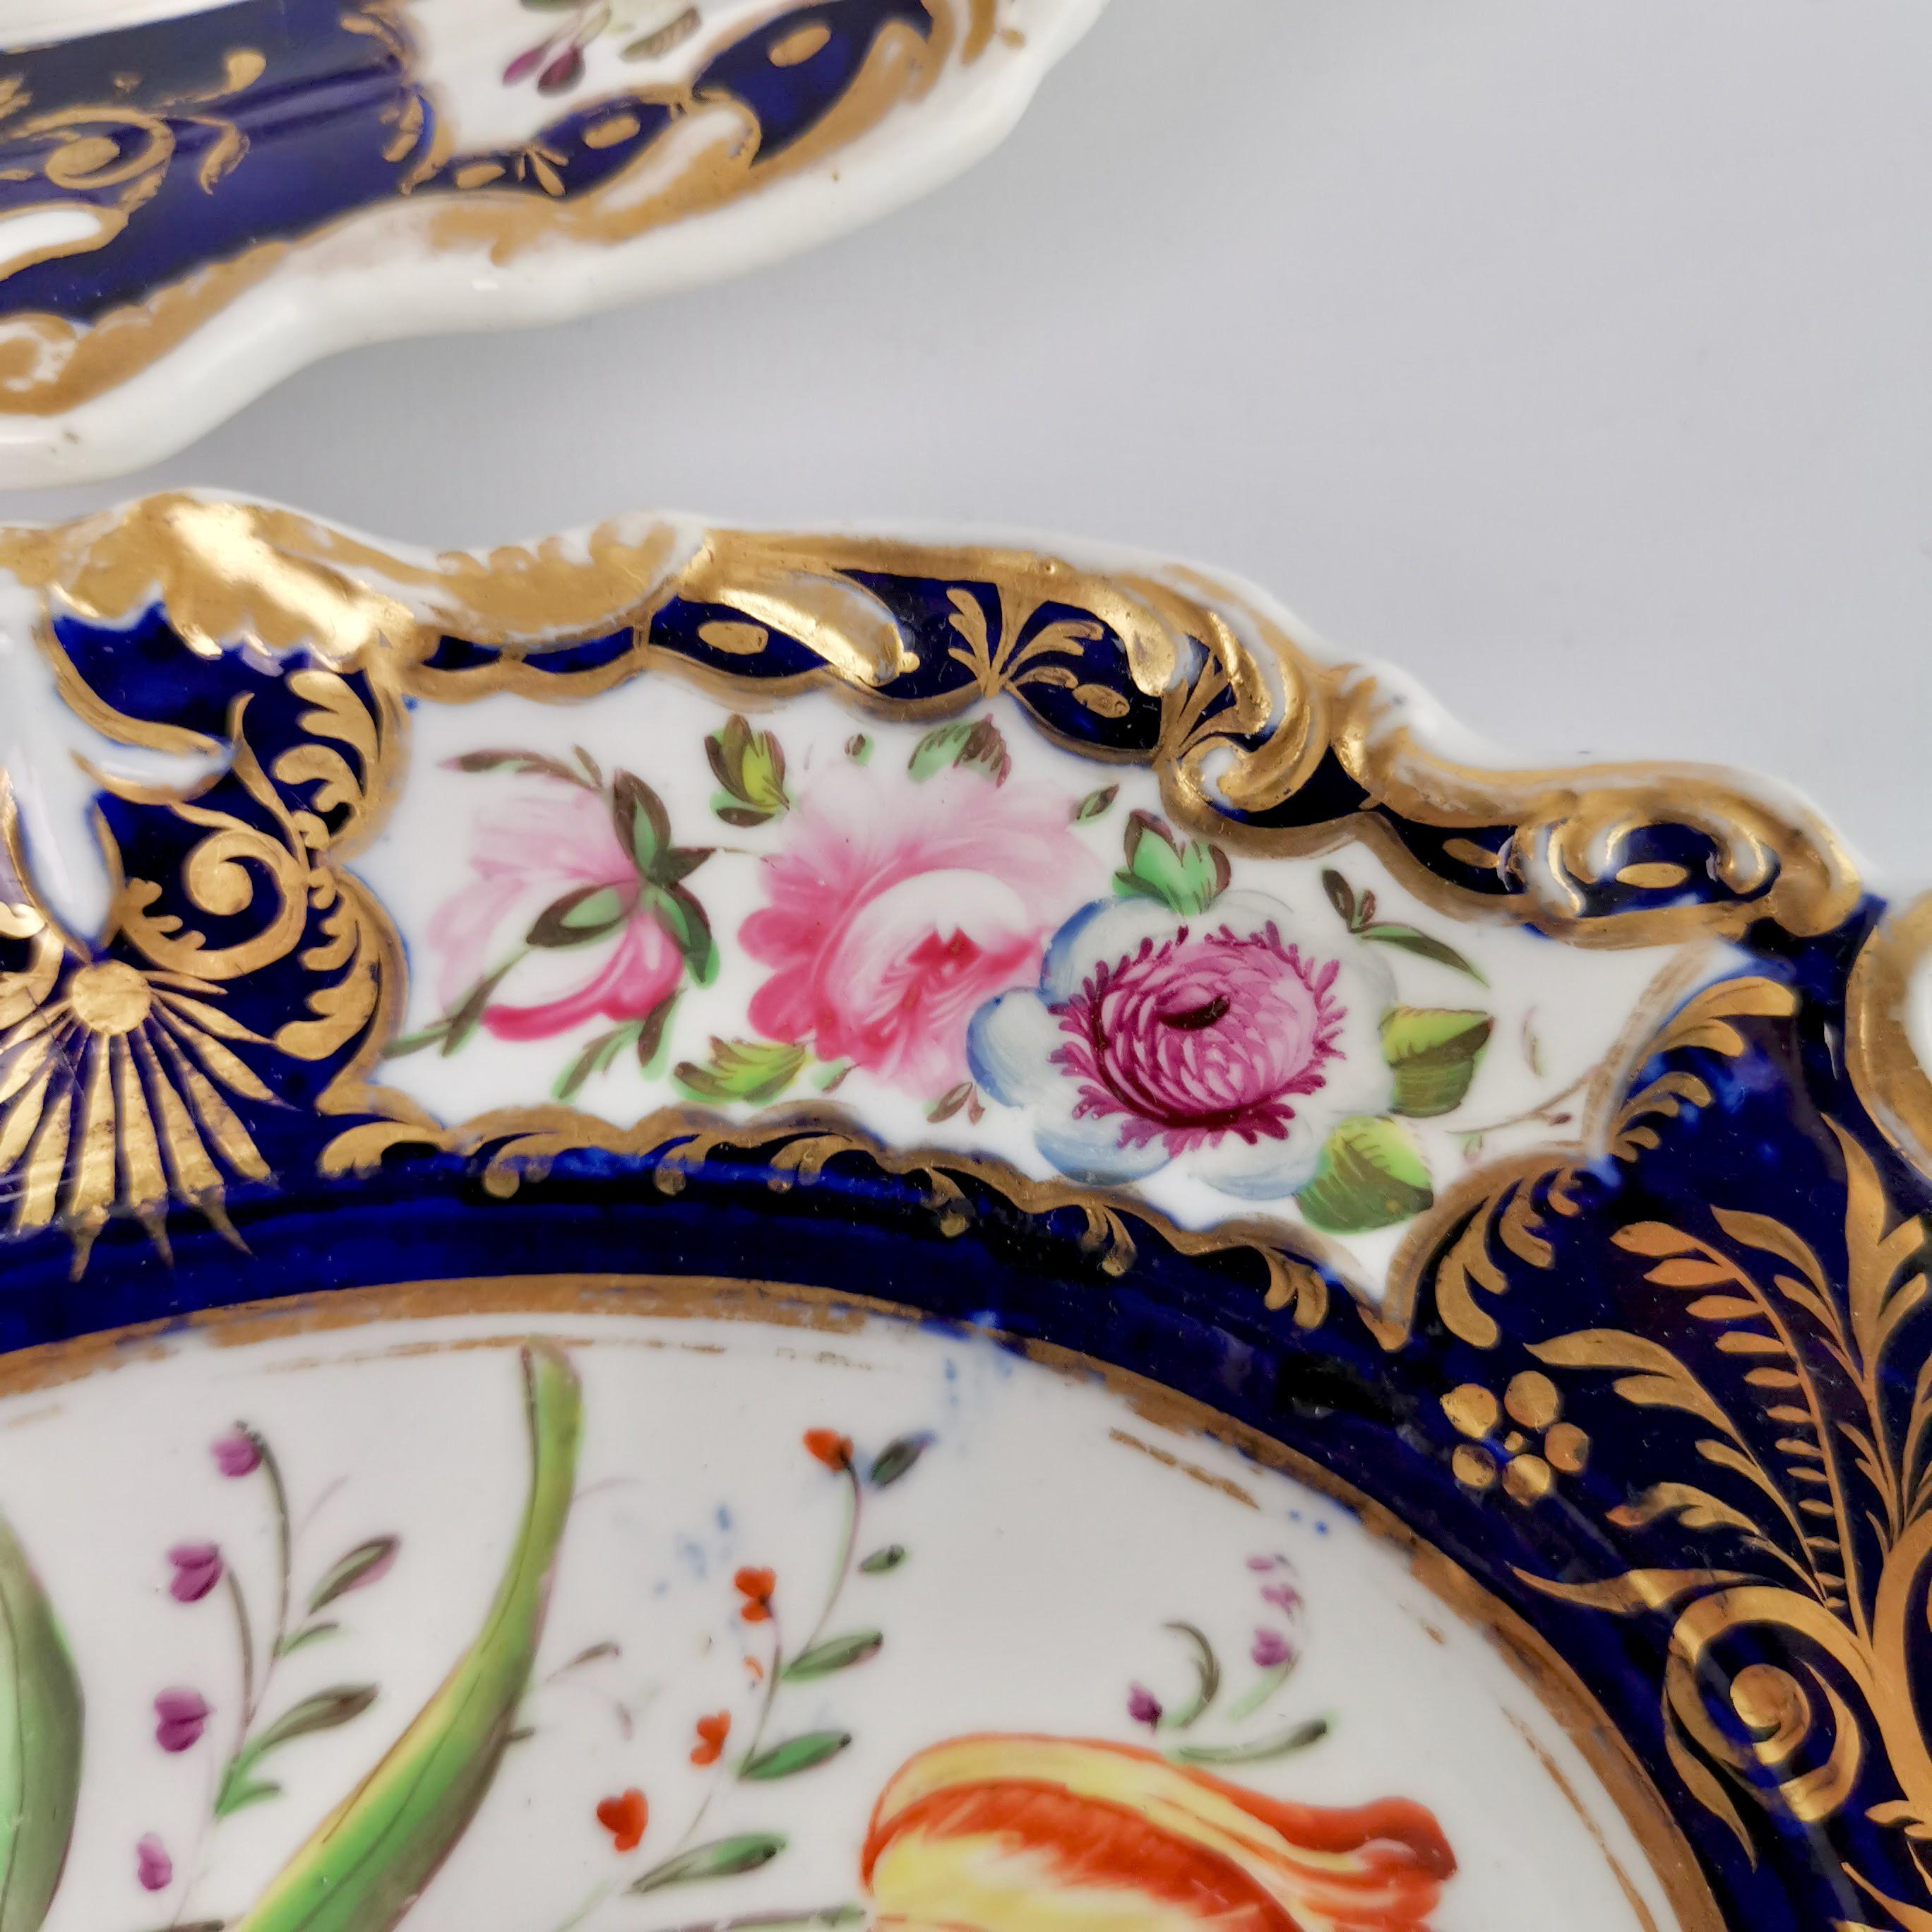 New Hall Porcelain Dessert Service, Cobalt Blue with Flowers, Regency 1824-1830 9